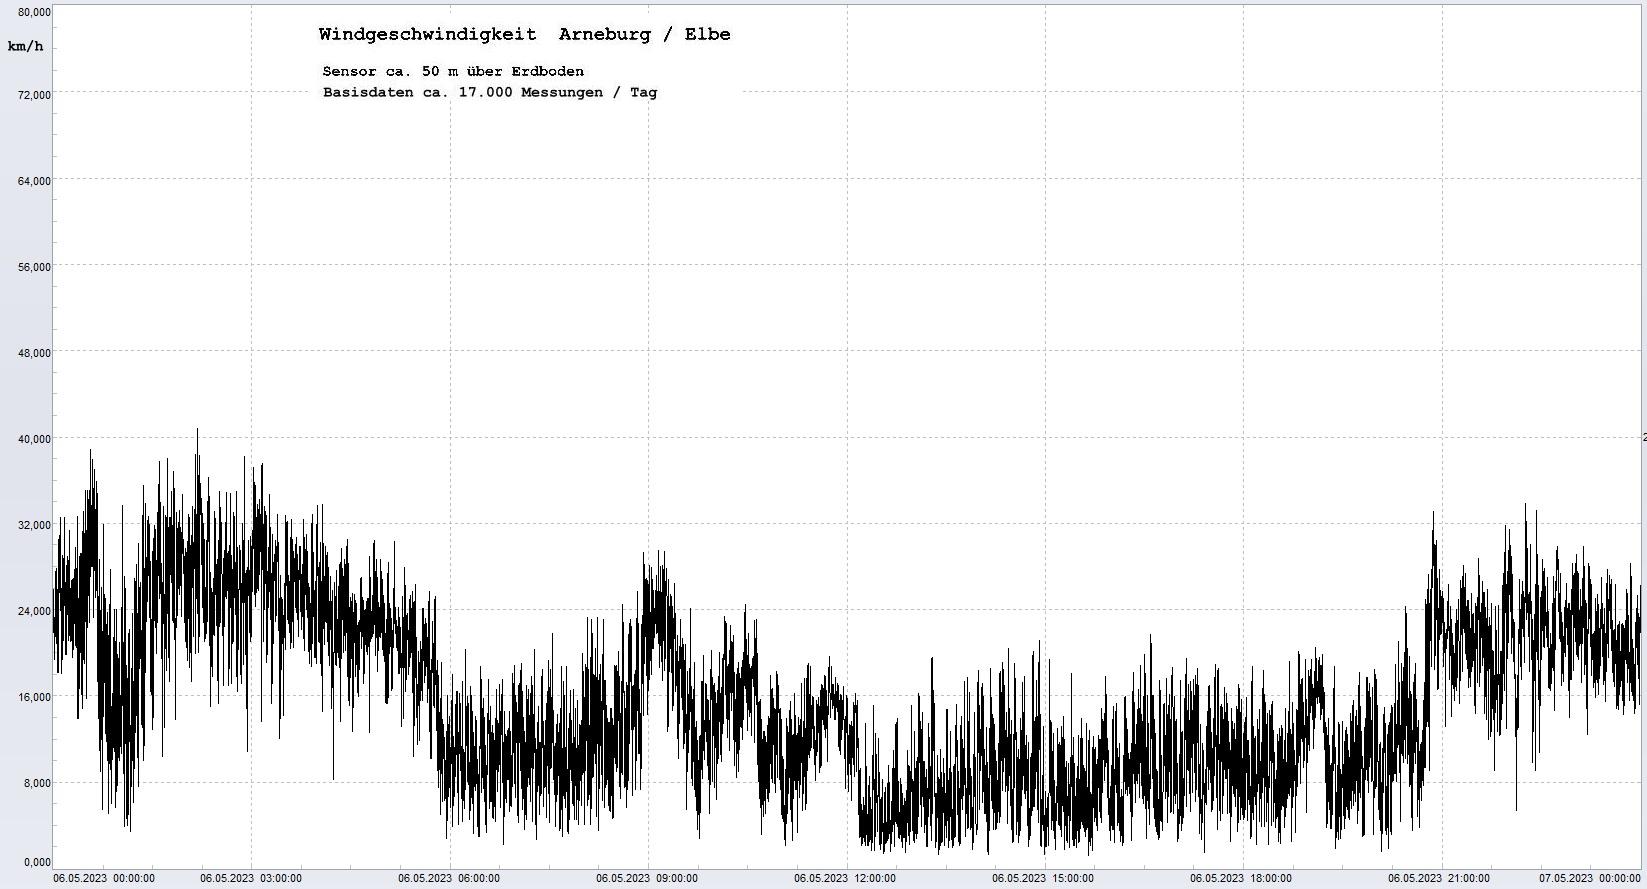 Arneburg Tages-Diagramm Winddaten, 06.05.2023
  Diagramm, Sensor auf Gebäude, ca. 50 m über Erdboden, Basis: 5s-Aufzeichnung